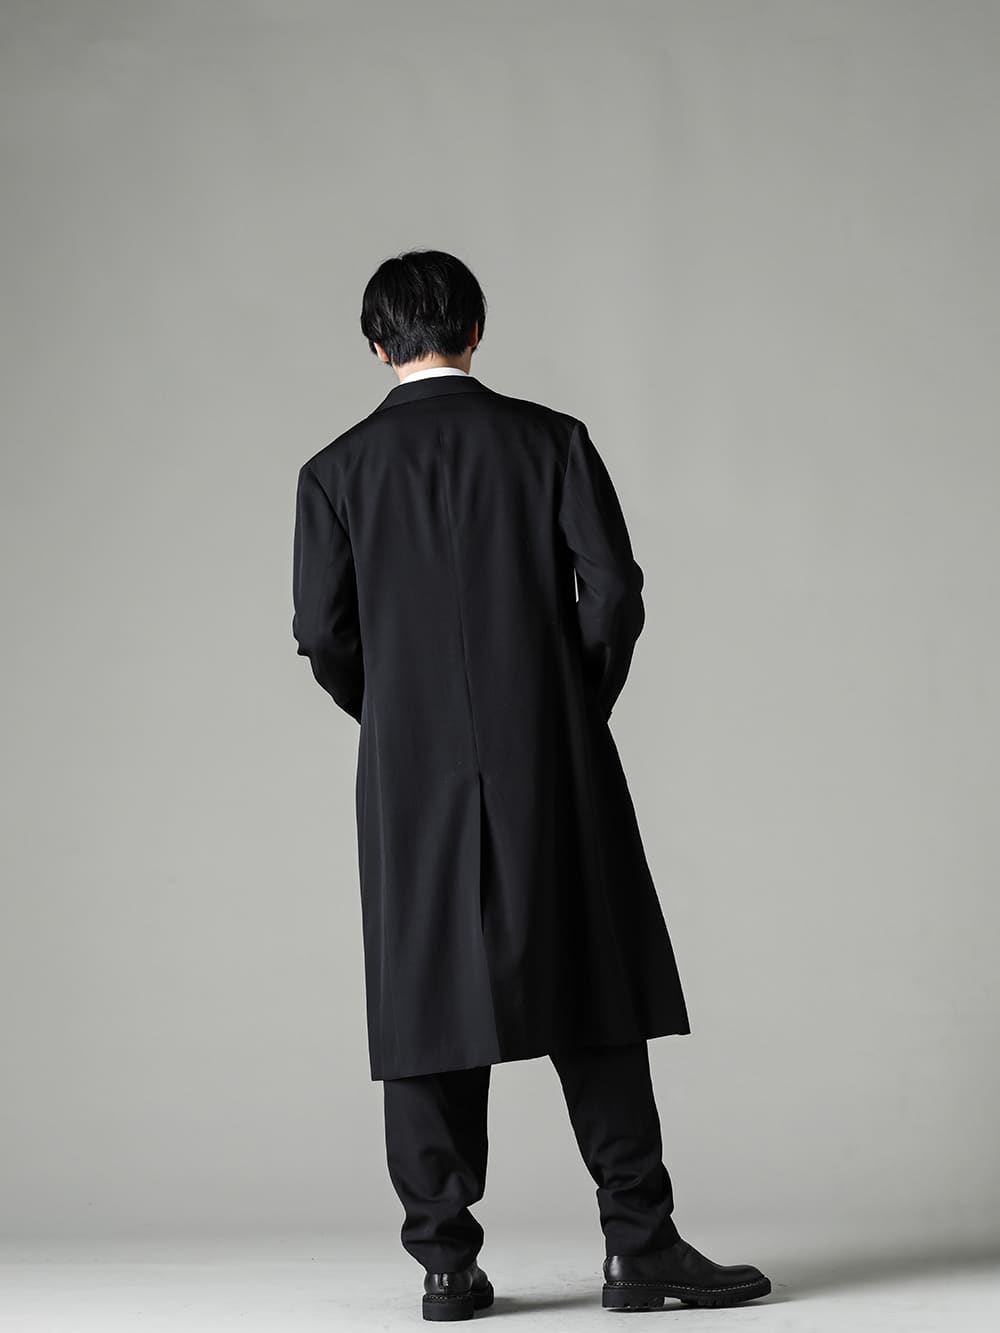 入荷情報] Yohji Yamamoto 22-23AW コレクション新着入荷